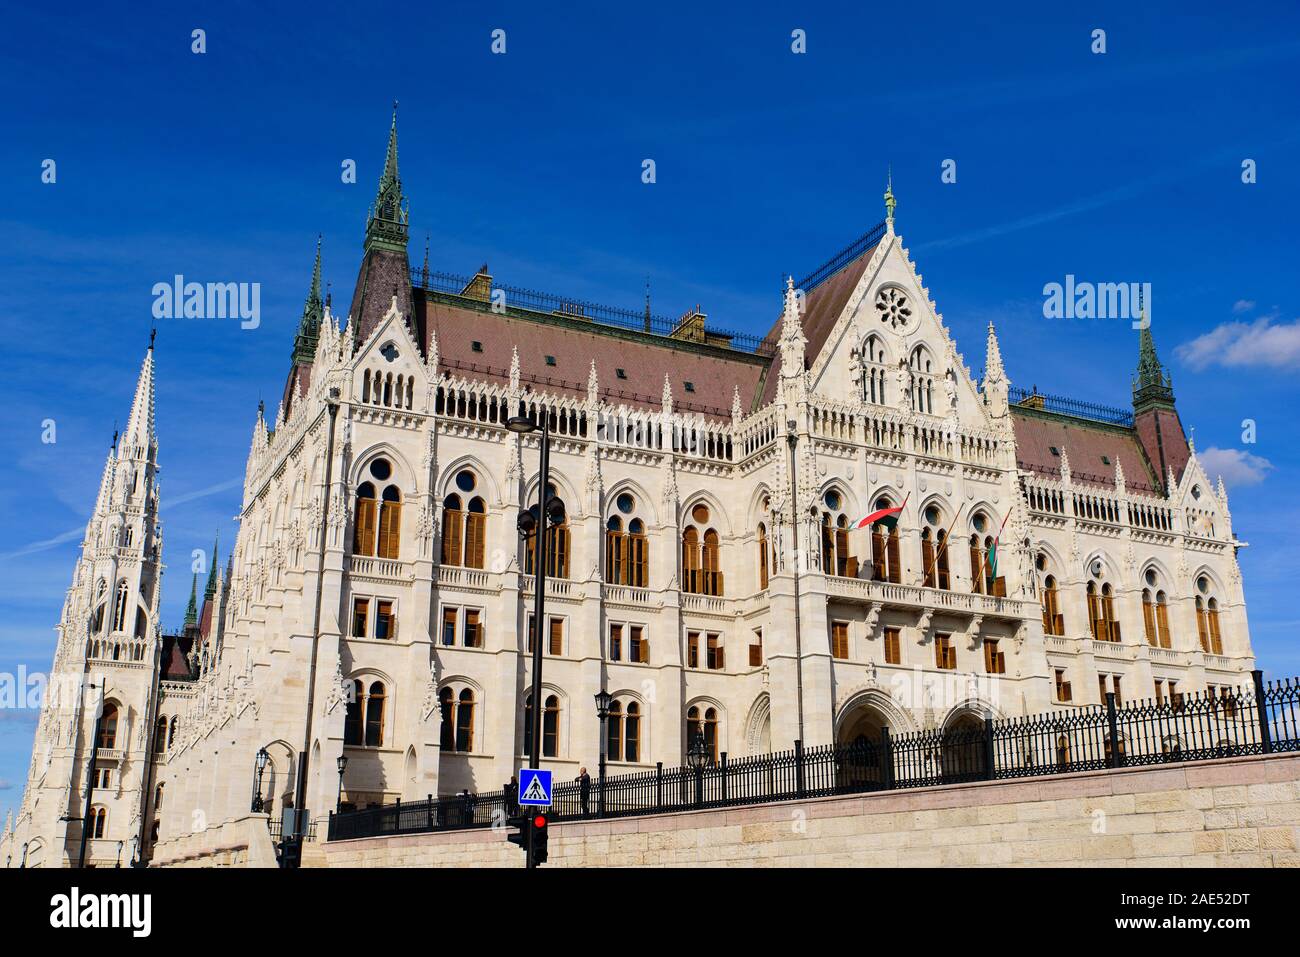 Parlamento ungherese edificio sulle rive del Danubio, Budapest, Ungheria Foto Stock